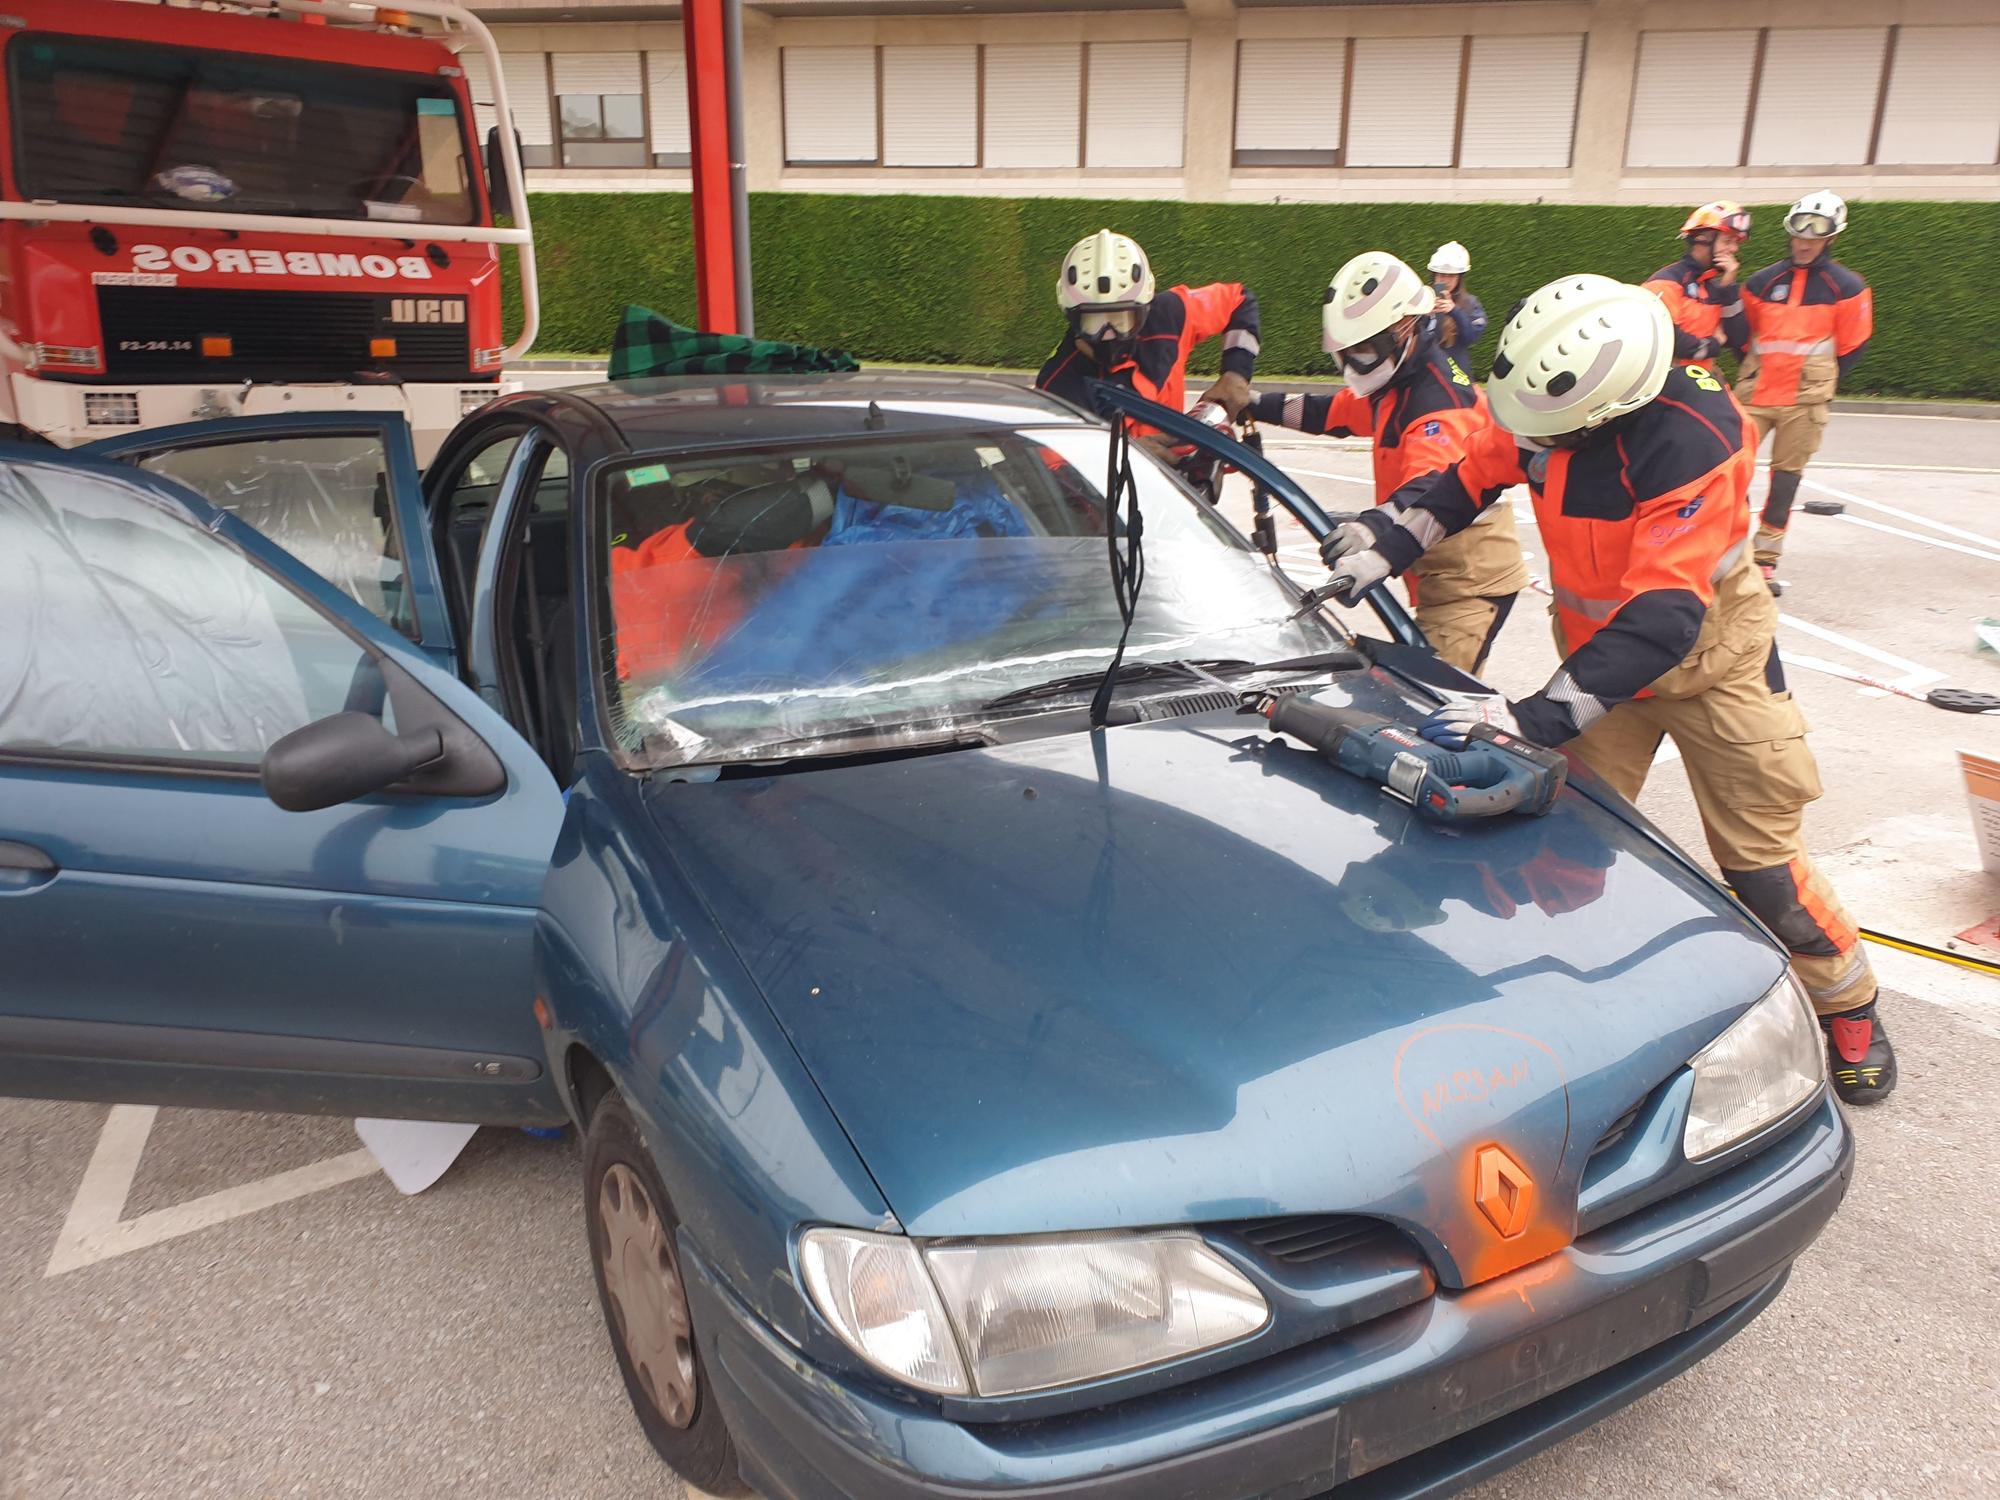 Rescates que echan chispas en Oviedo: los bombeos ensayan rescates en coches eléctricos